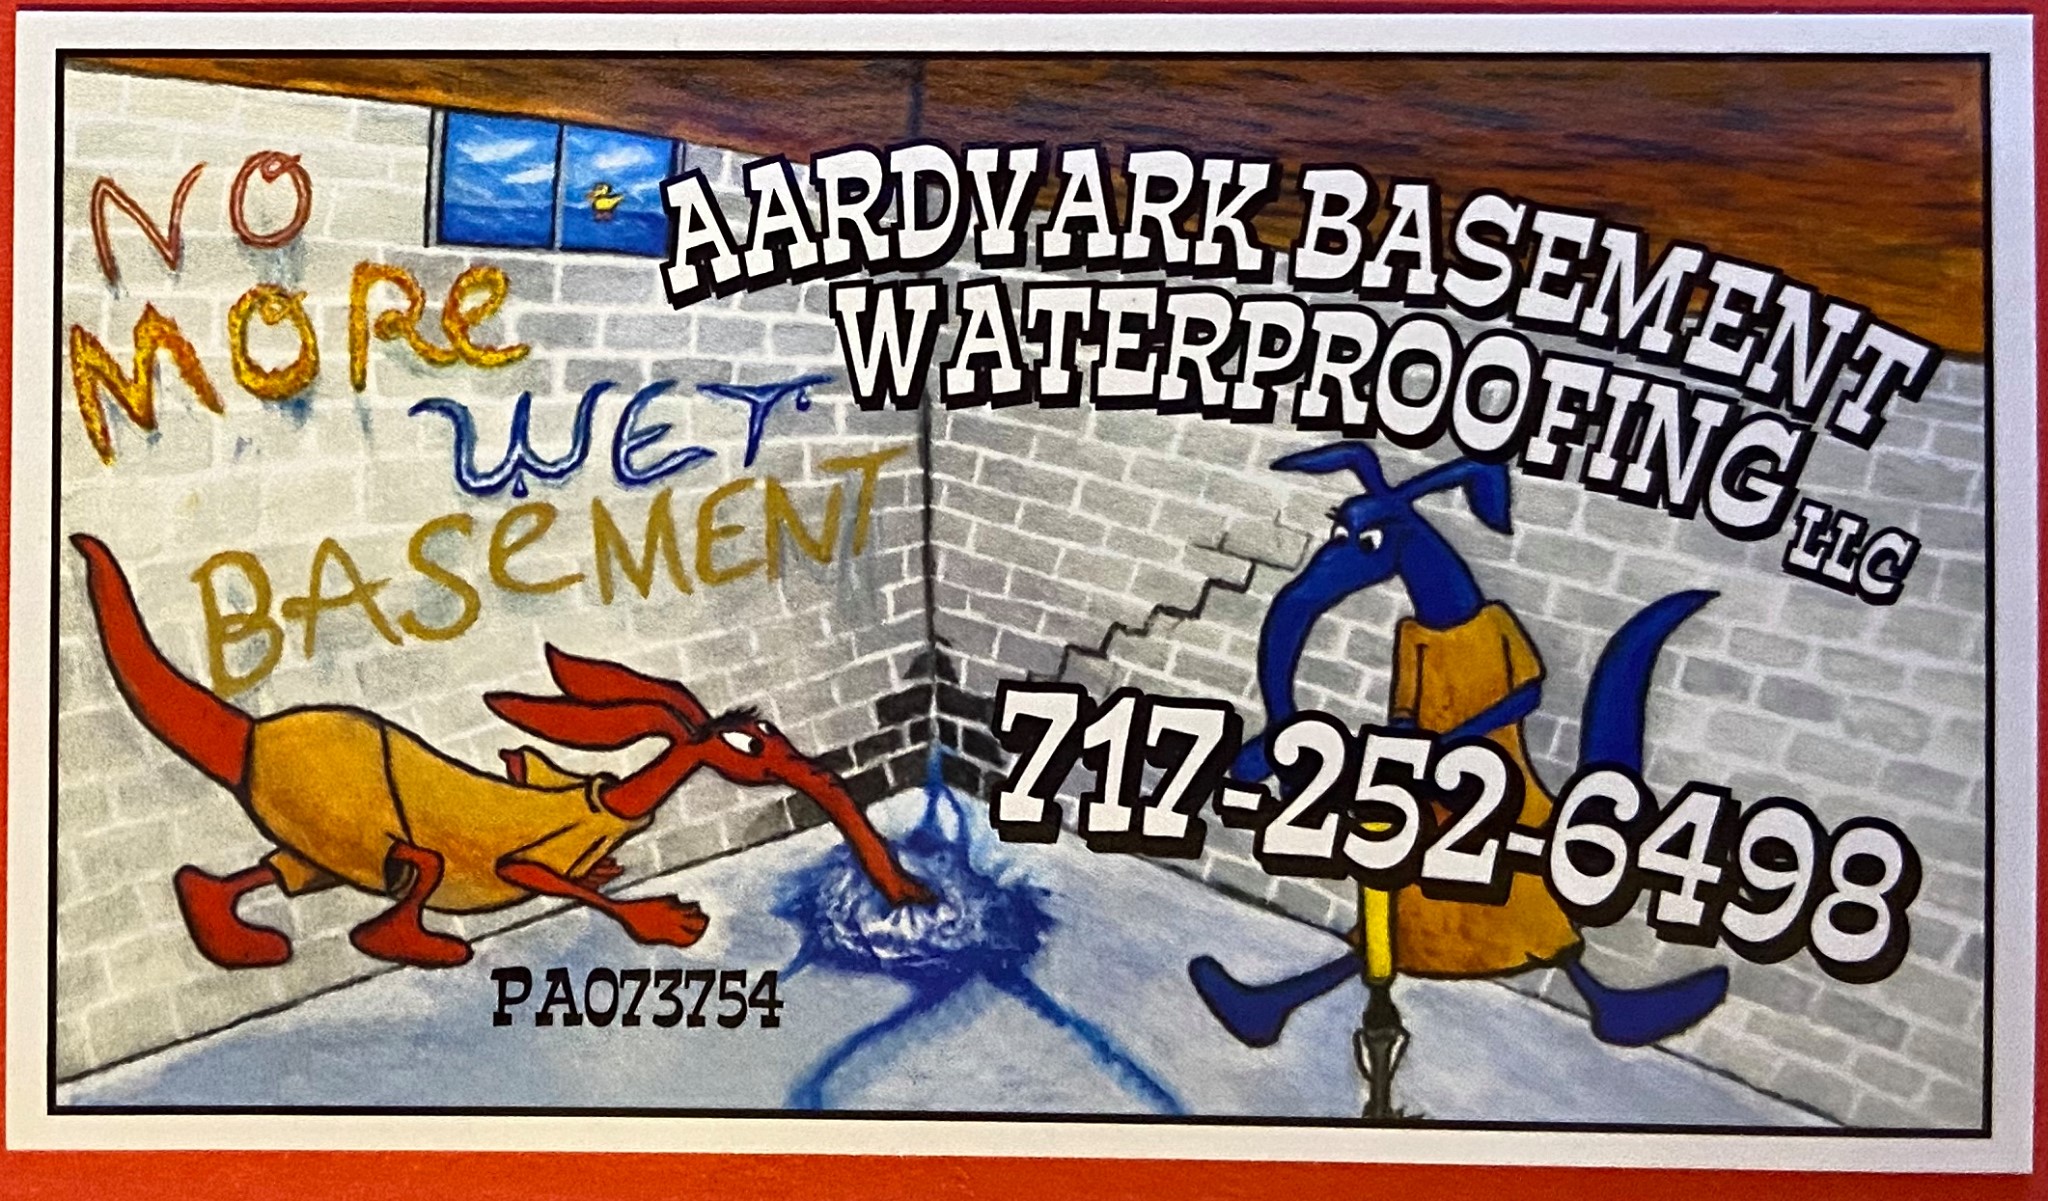 Aardvark Basement Waterproofing